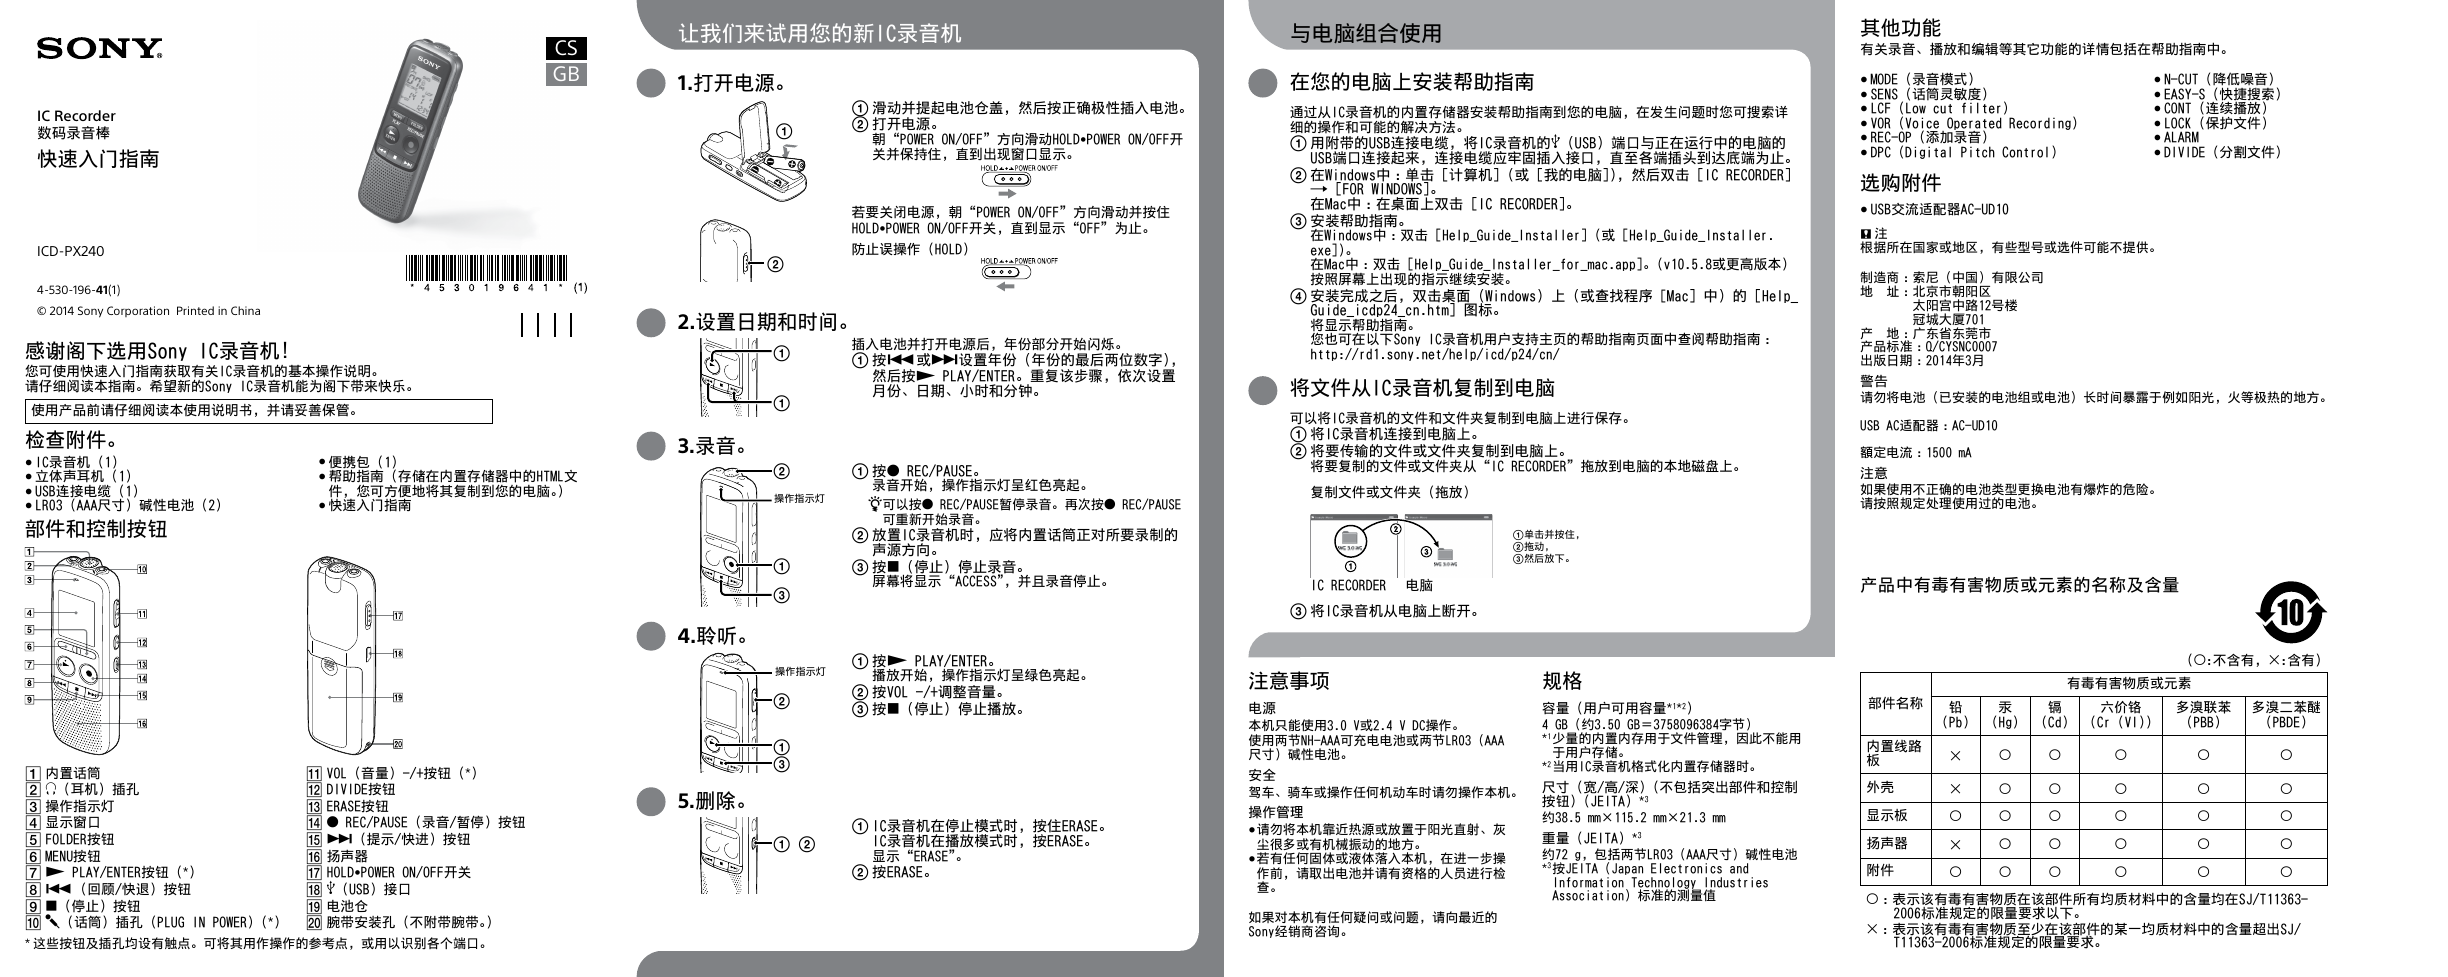 SONY数码影音-ICD-PX240说明书.pdf